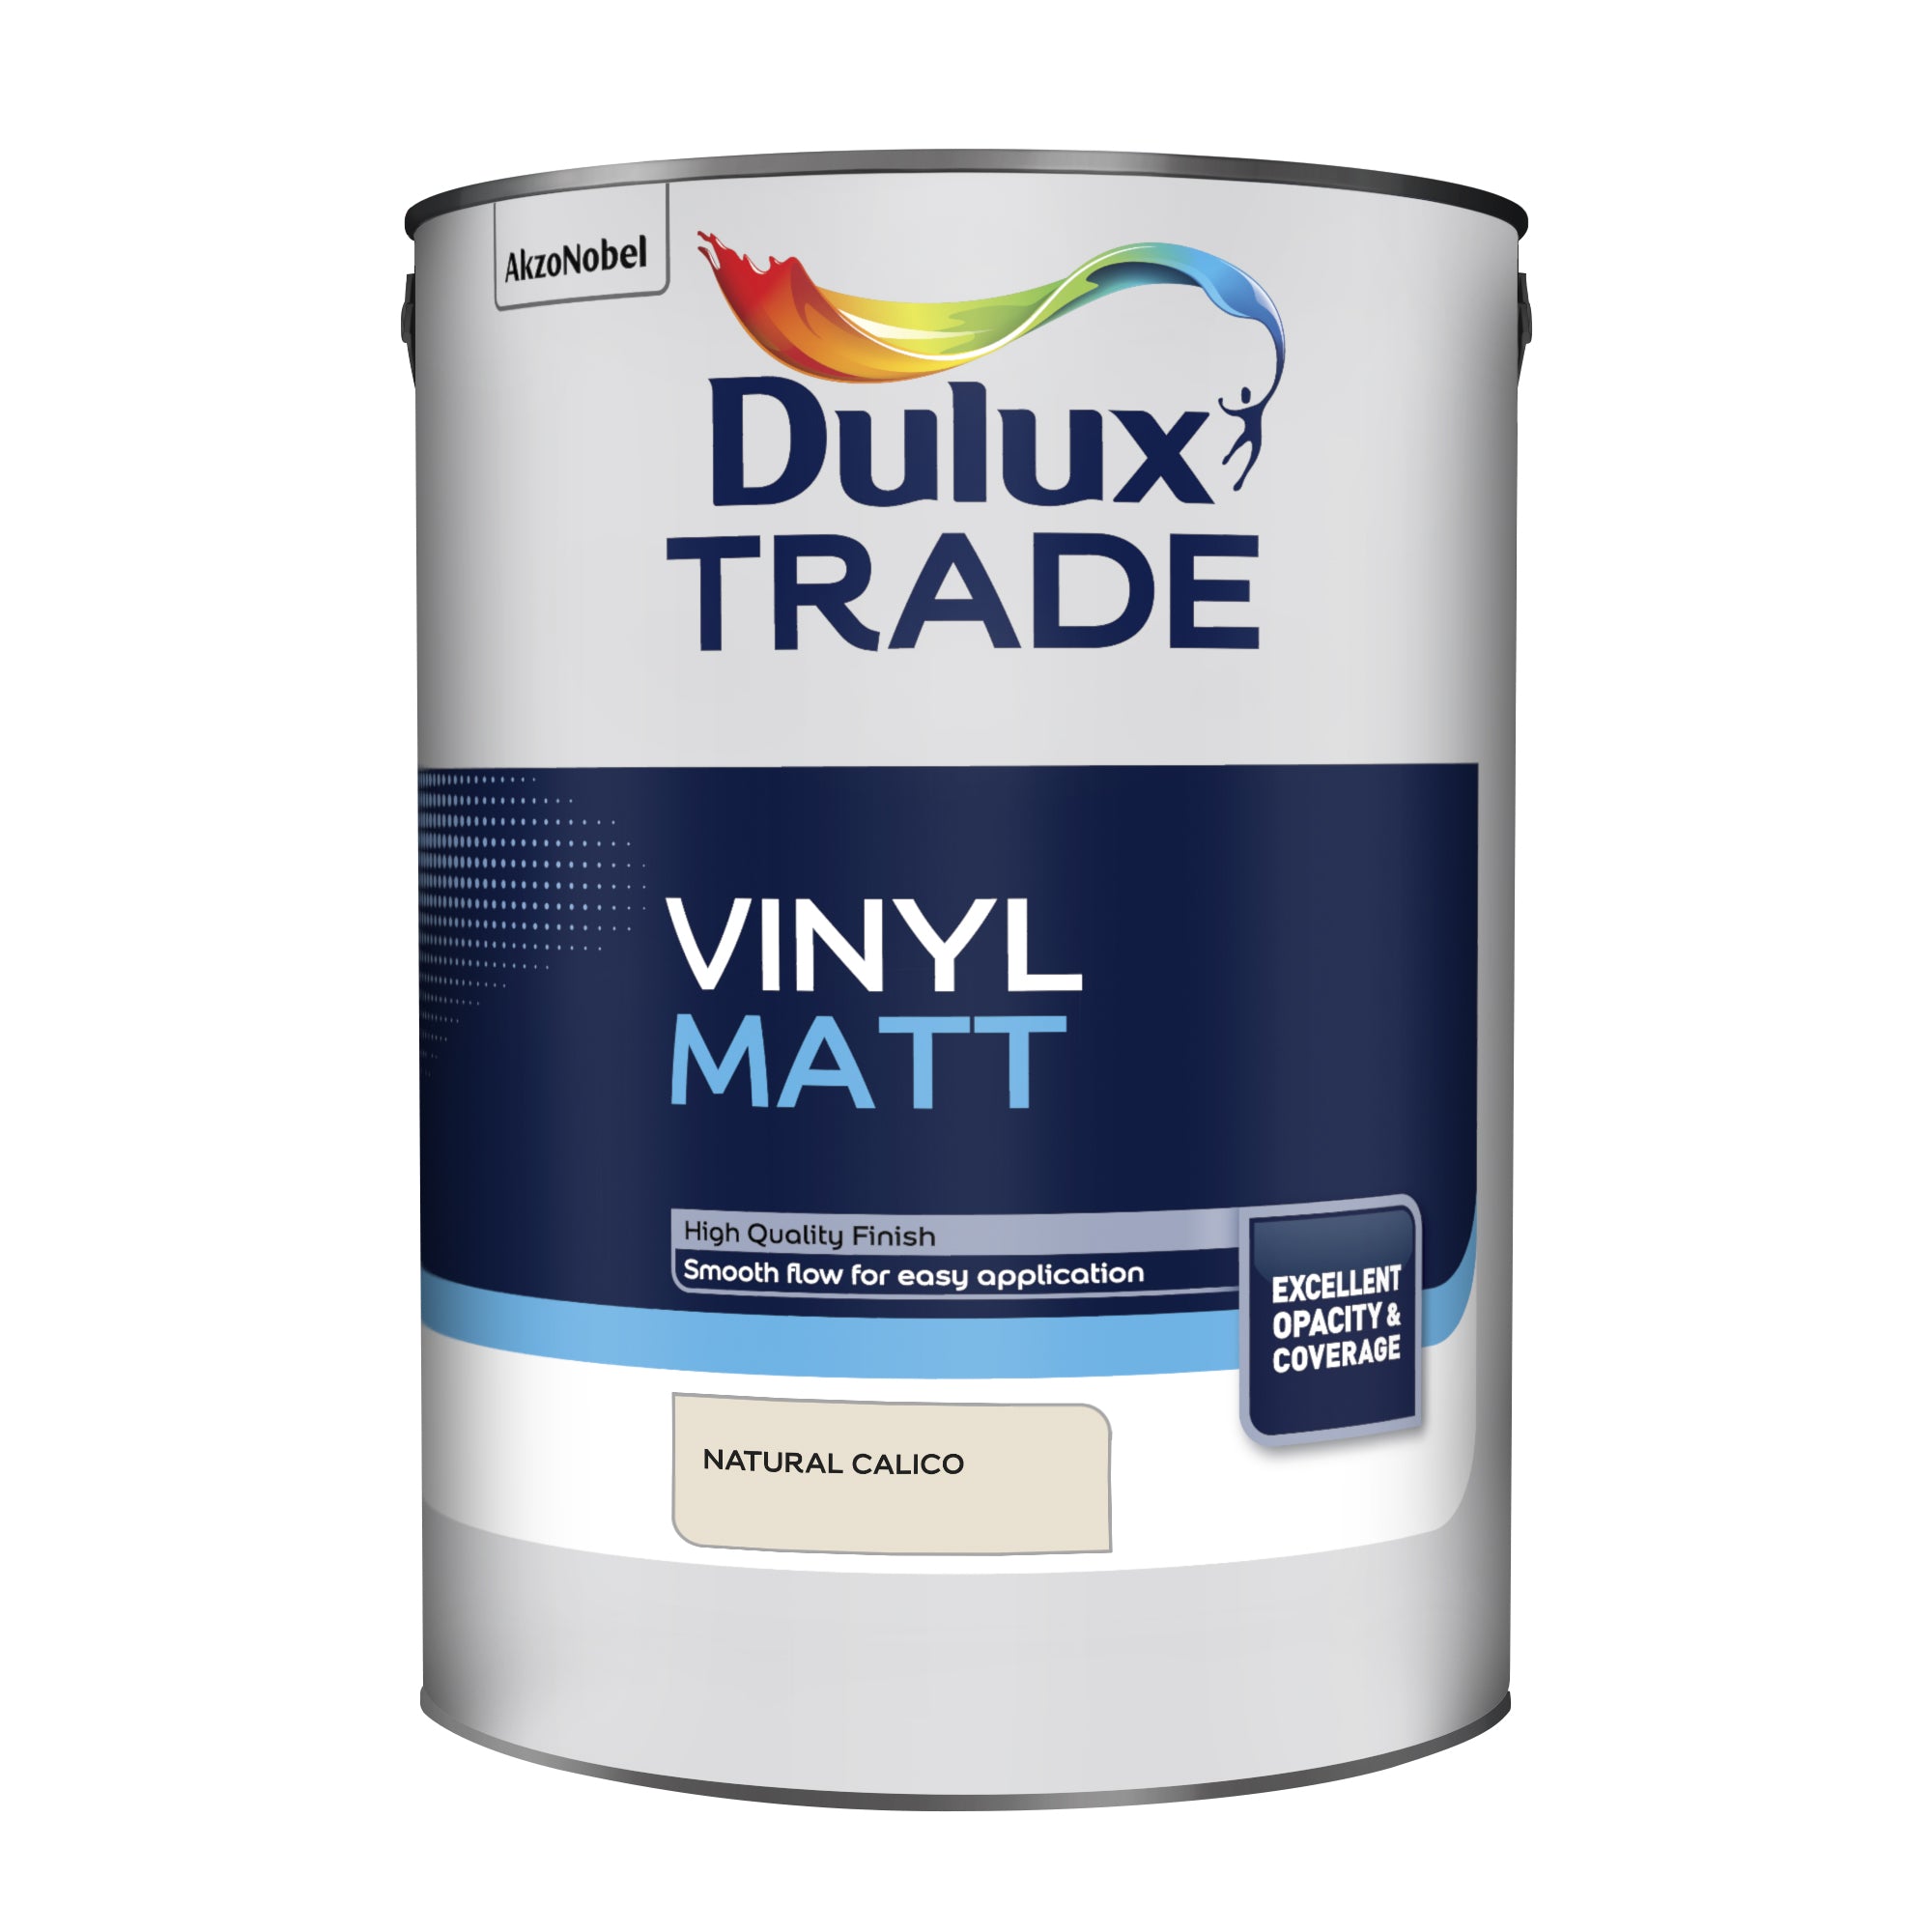 Dulux Trade Vinyl Matt Natural Calico 5L